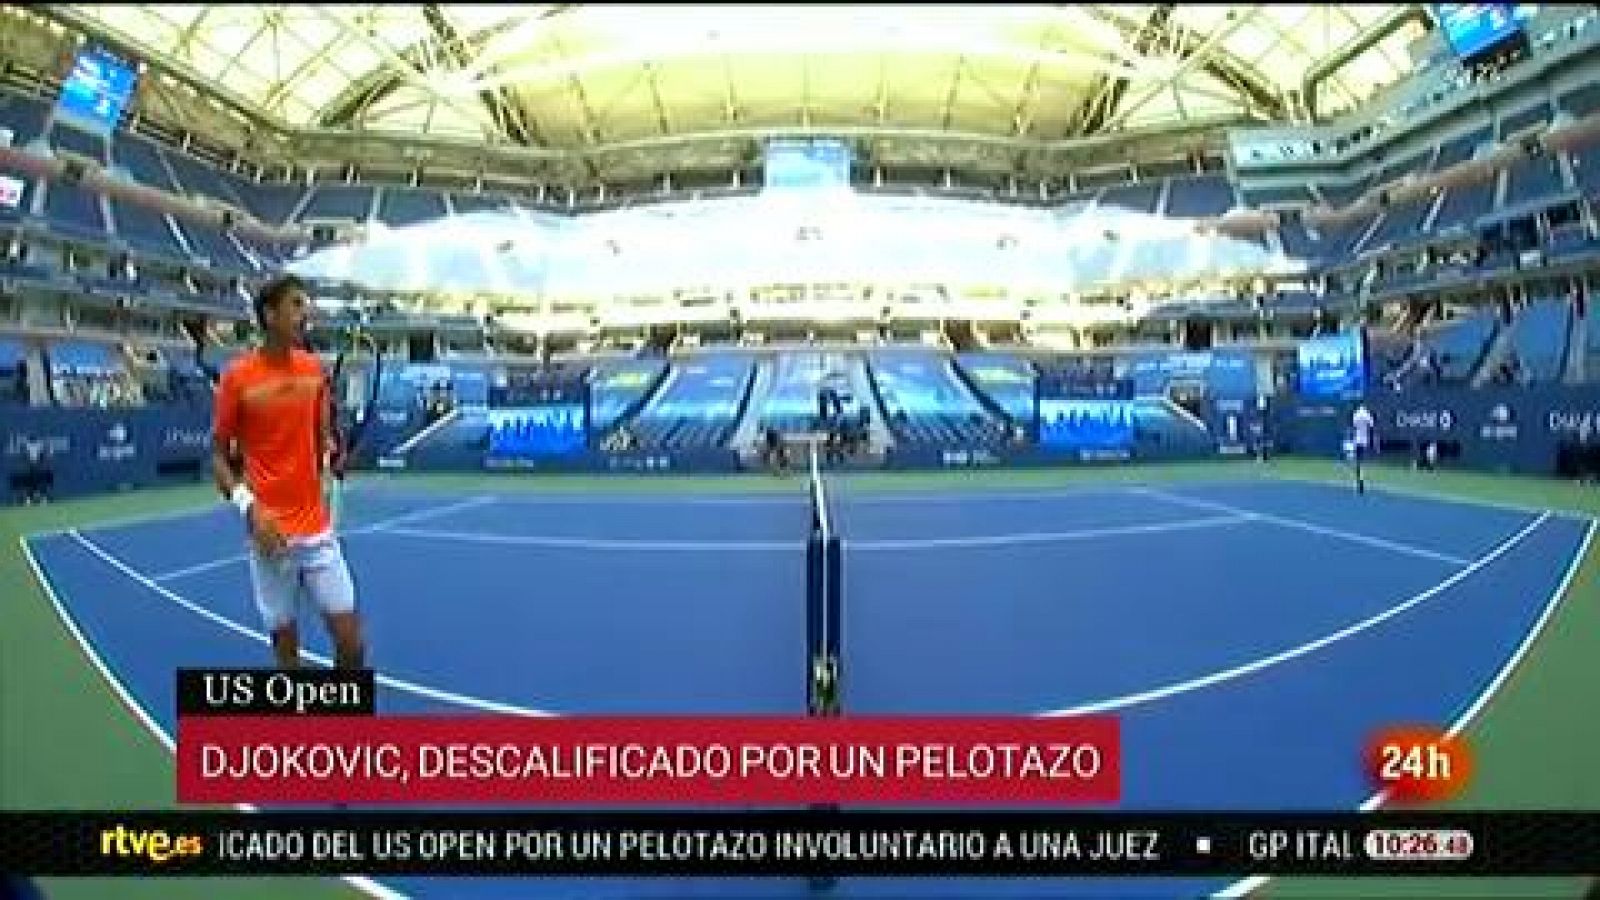 Djokovic, descalificado del US Open por dar una pelotazo a una jueza